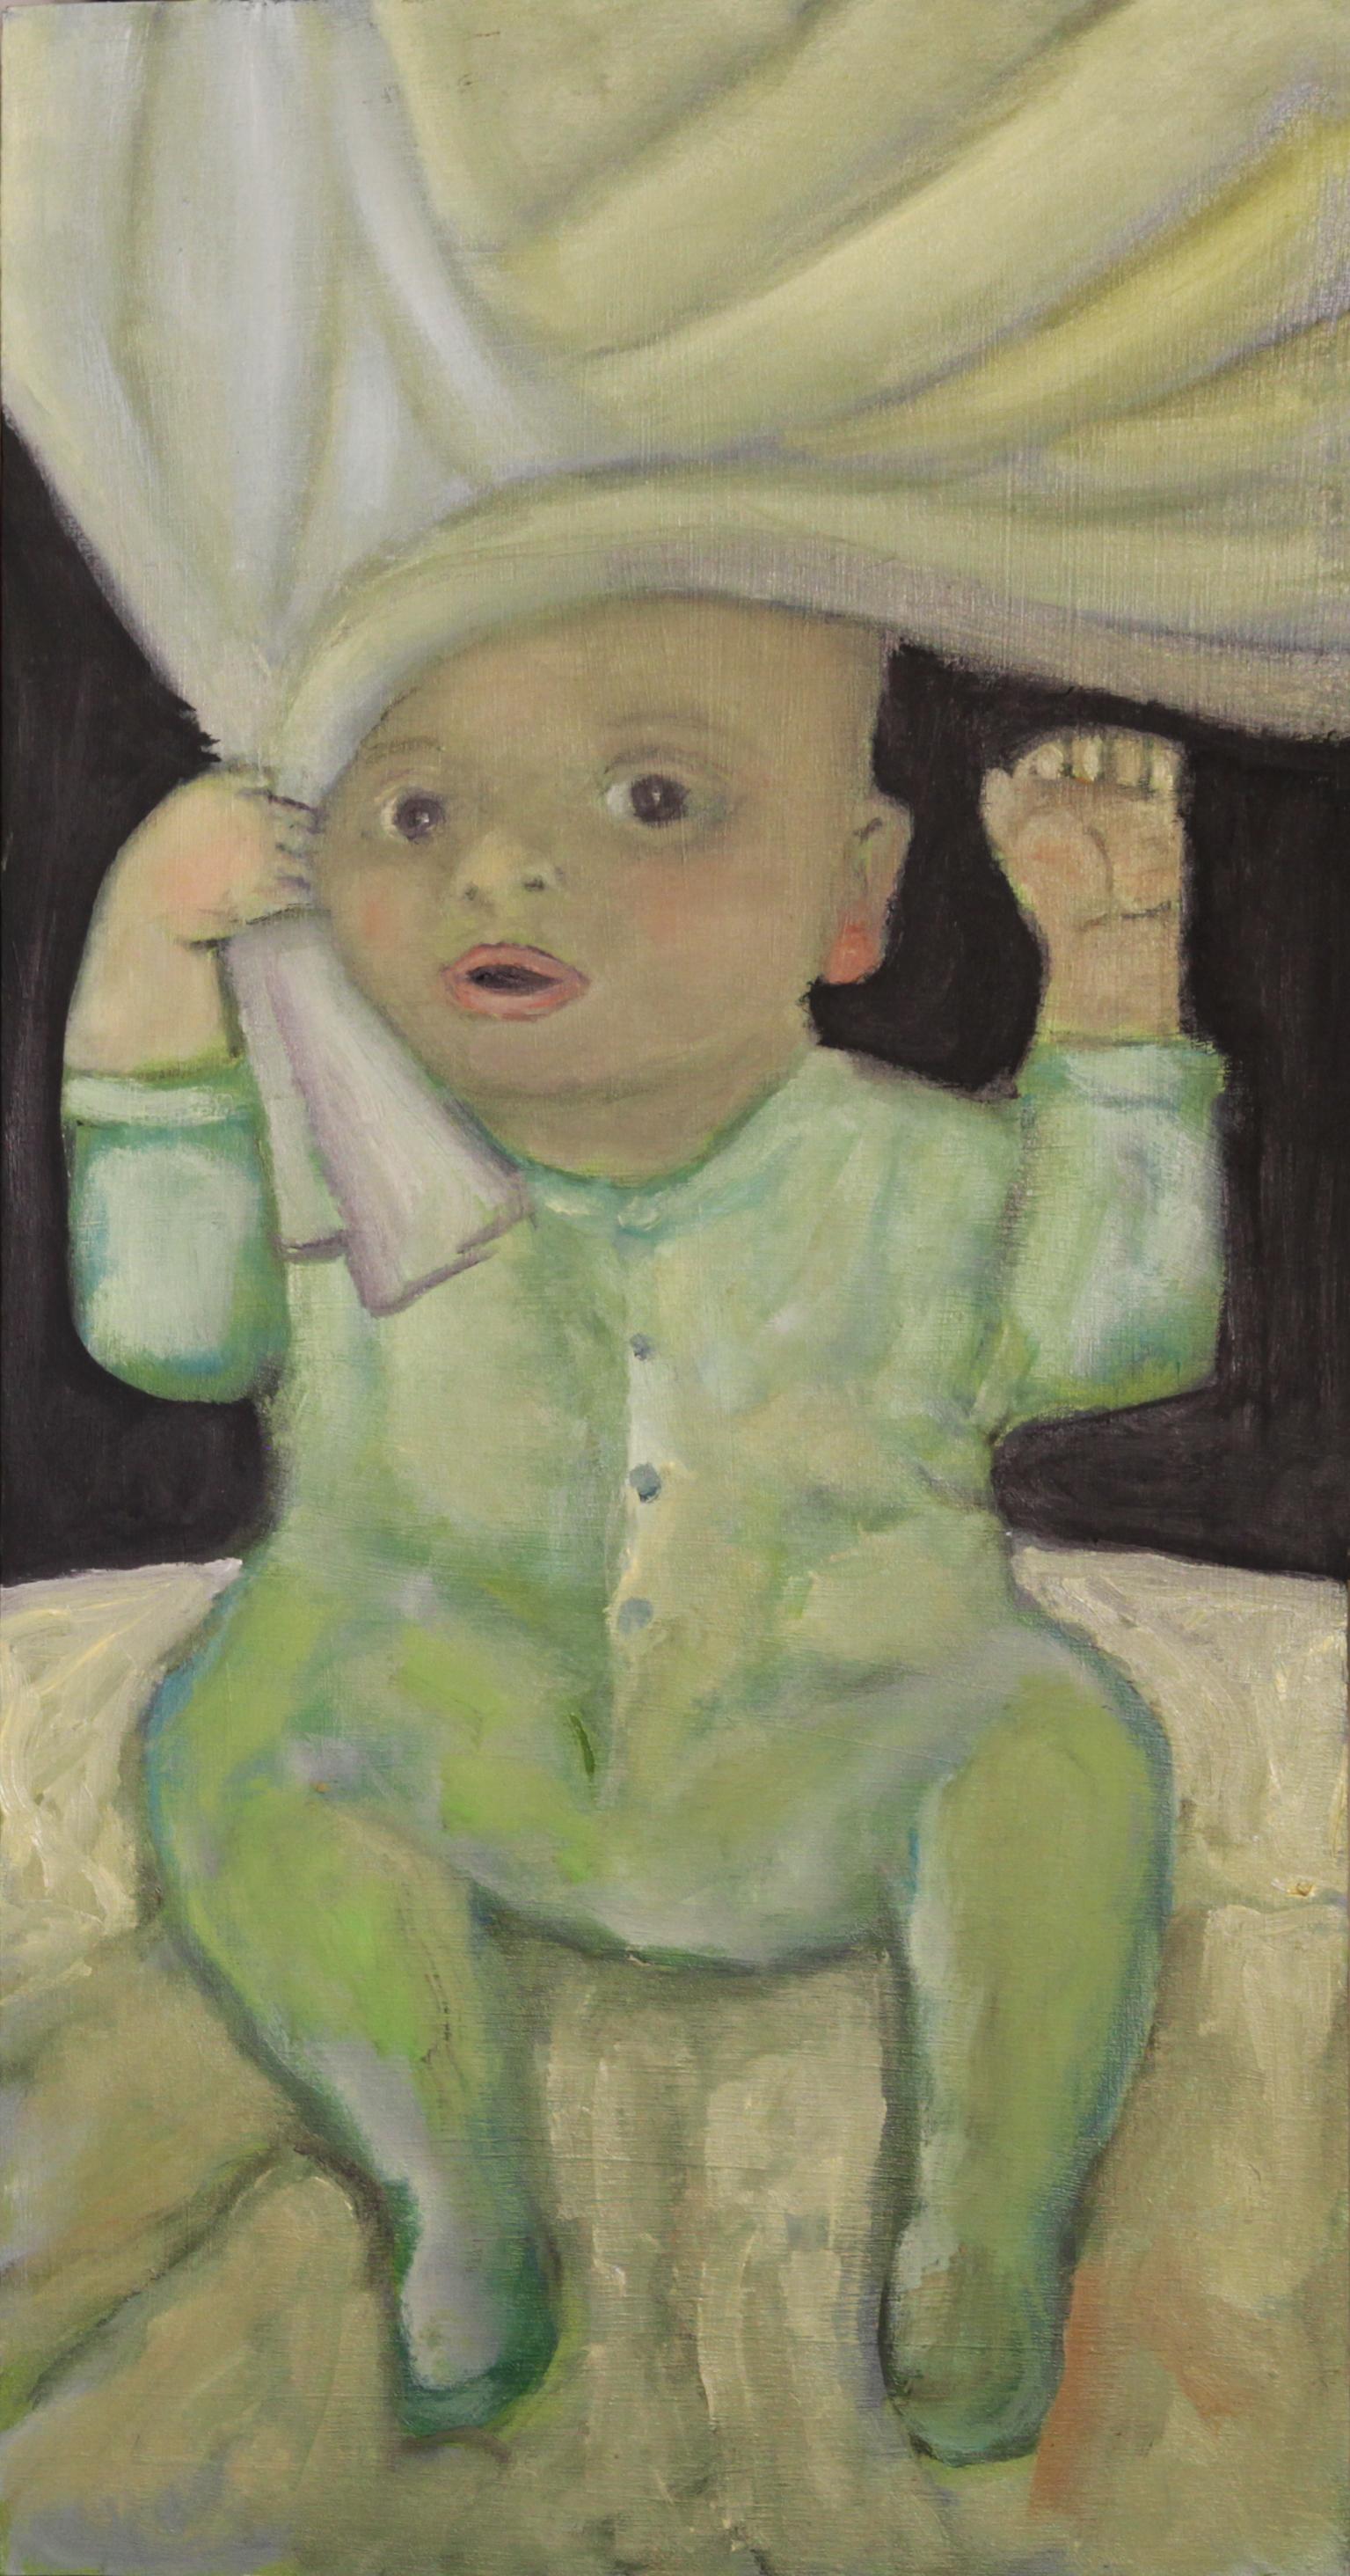 Stephen Basso Figurative Painting – Handtuch-Prinz.  Baby in weicher Farbe, schlafend, traumhaft, fröhlich